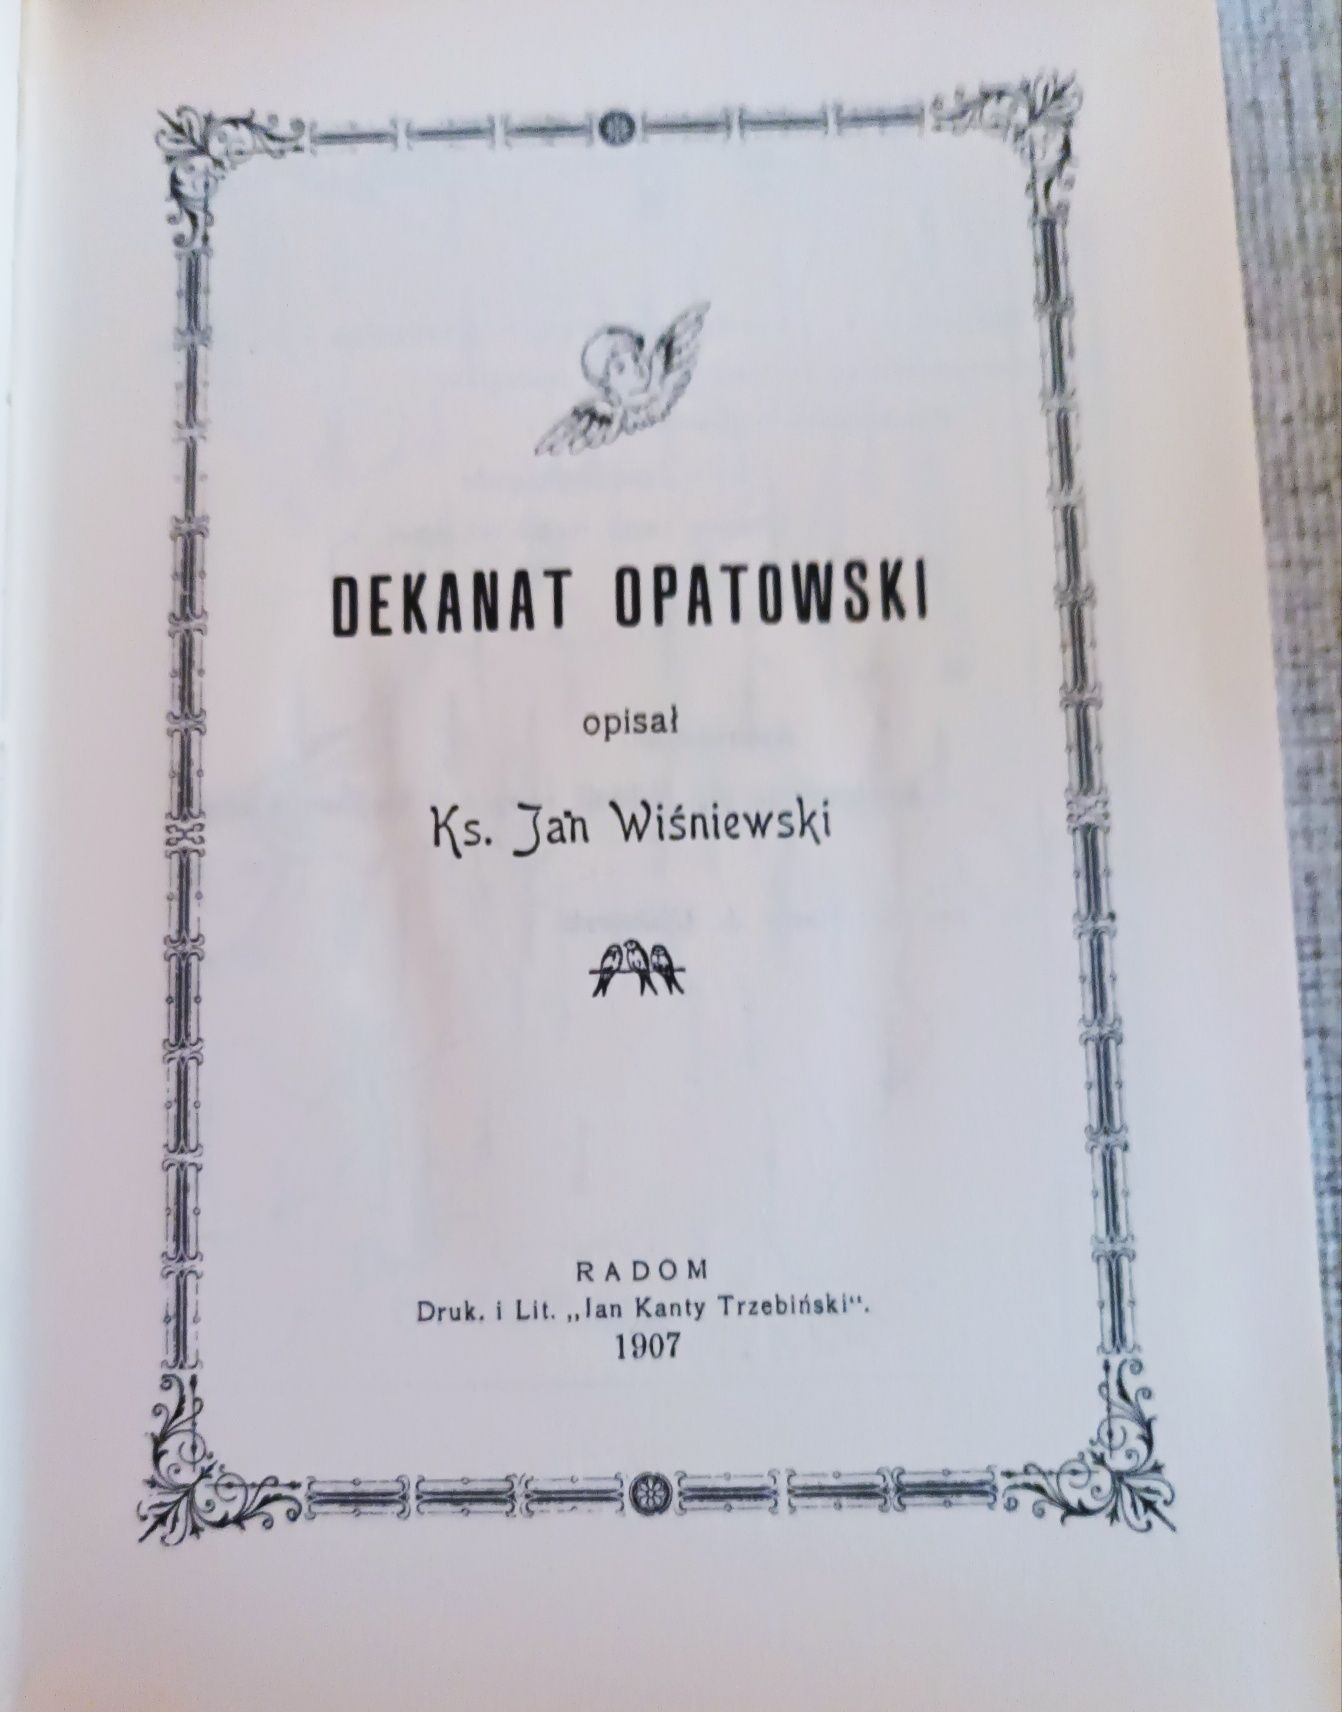 Dekanat opatowski, ks. Jan Wiśniewski